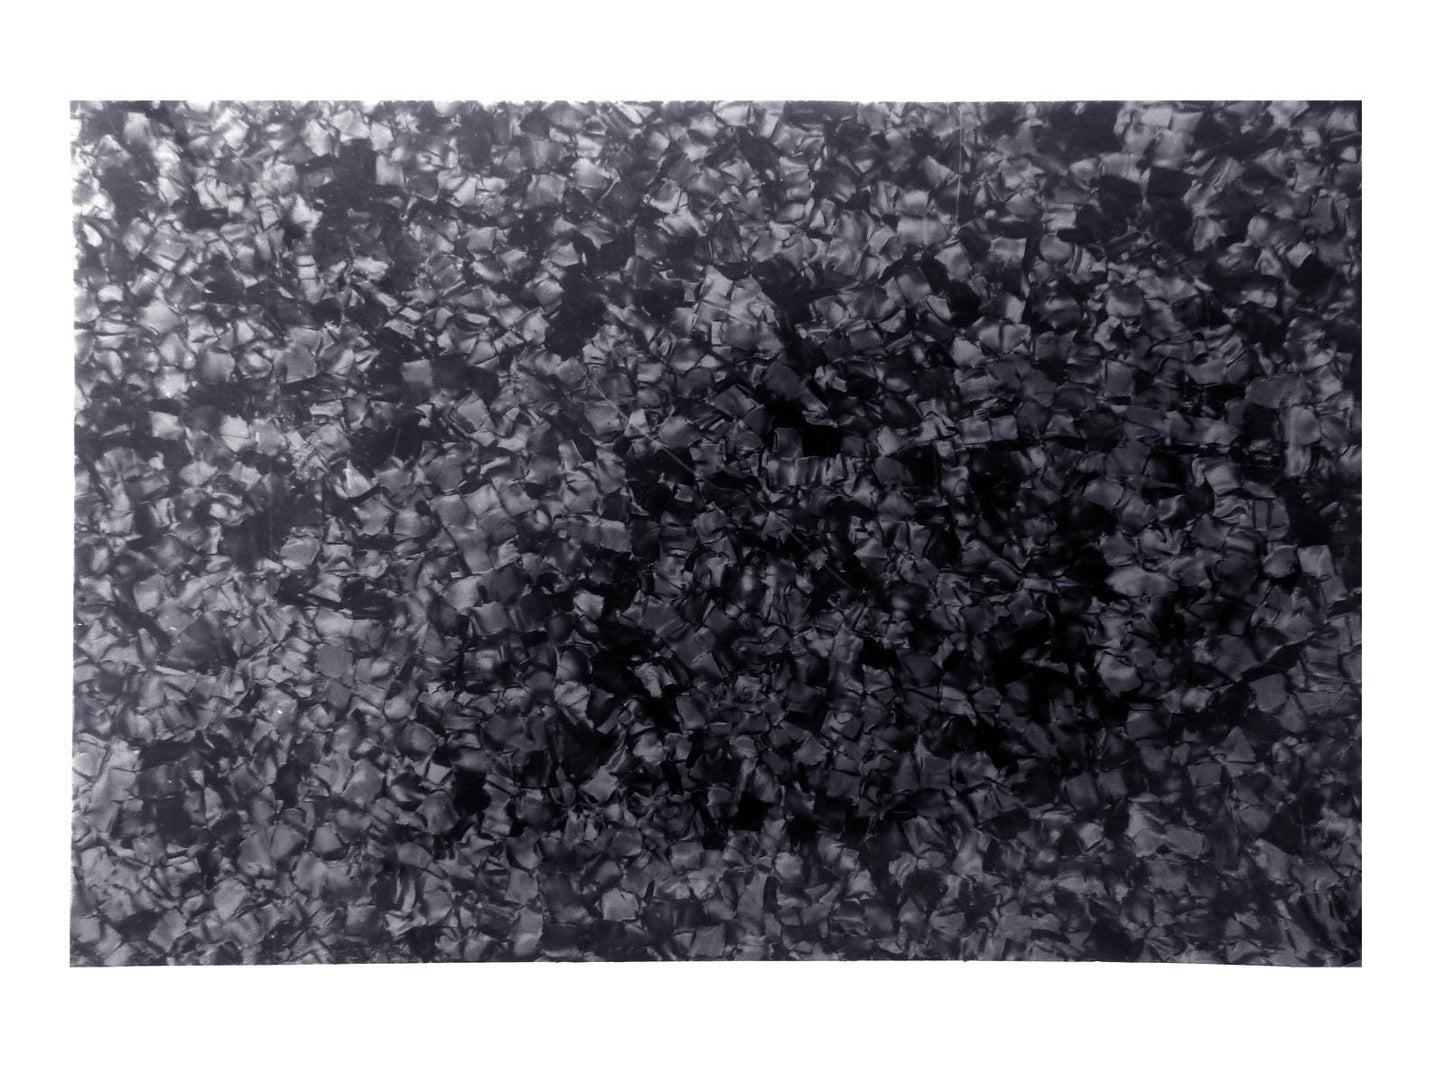 Incudo Black Pearloid Celluloid Sheet - 430x290x1mm (16.9x11.42x0.04")